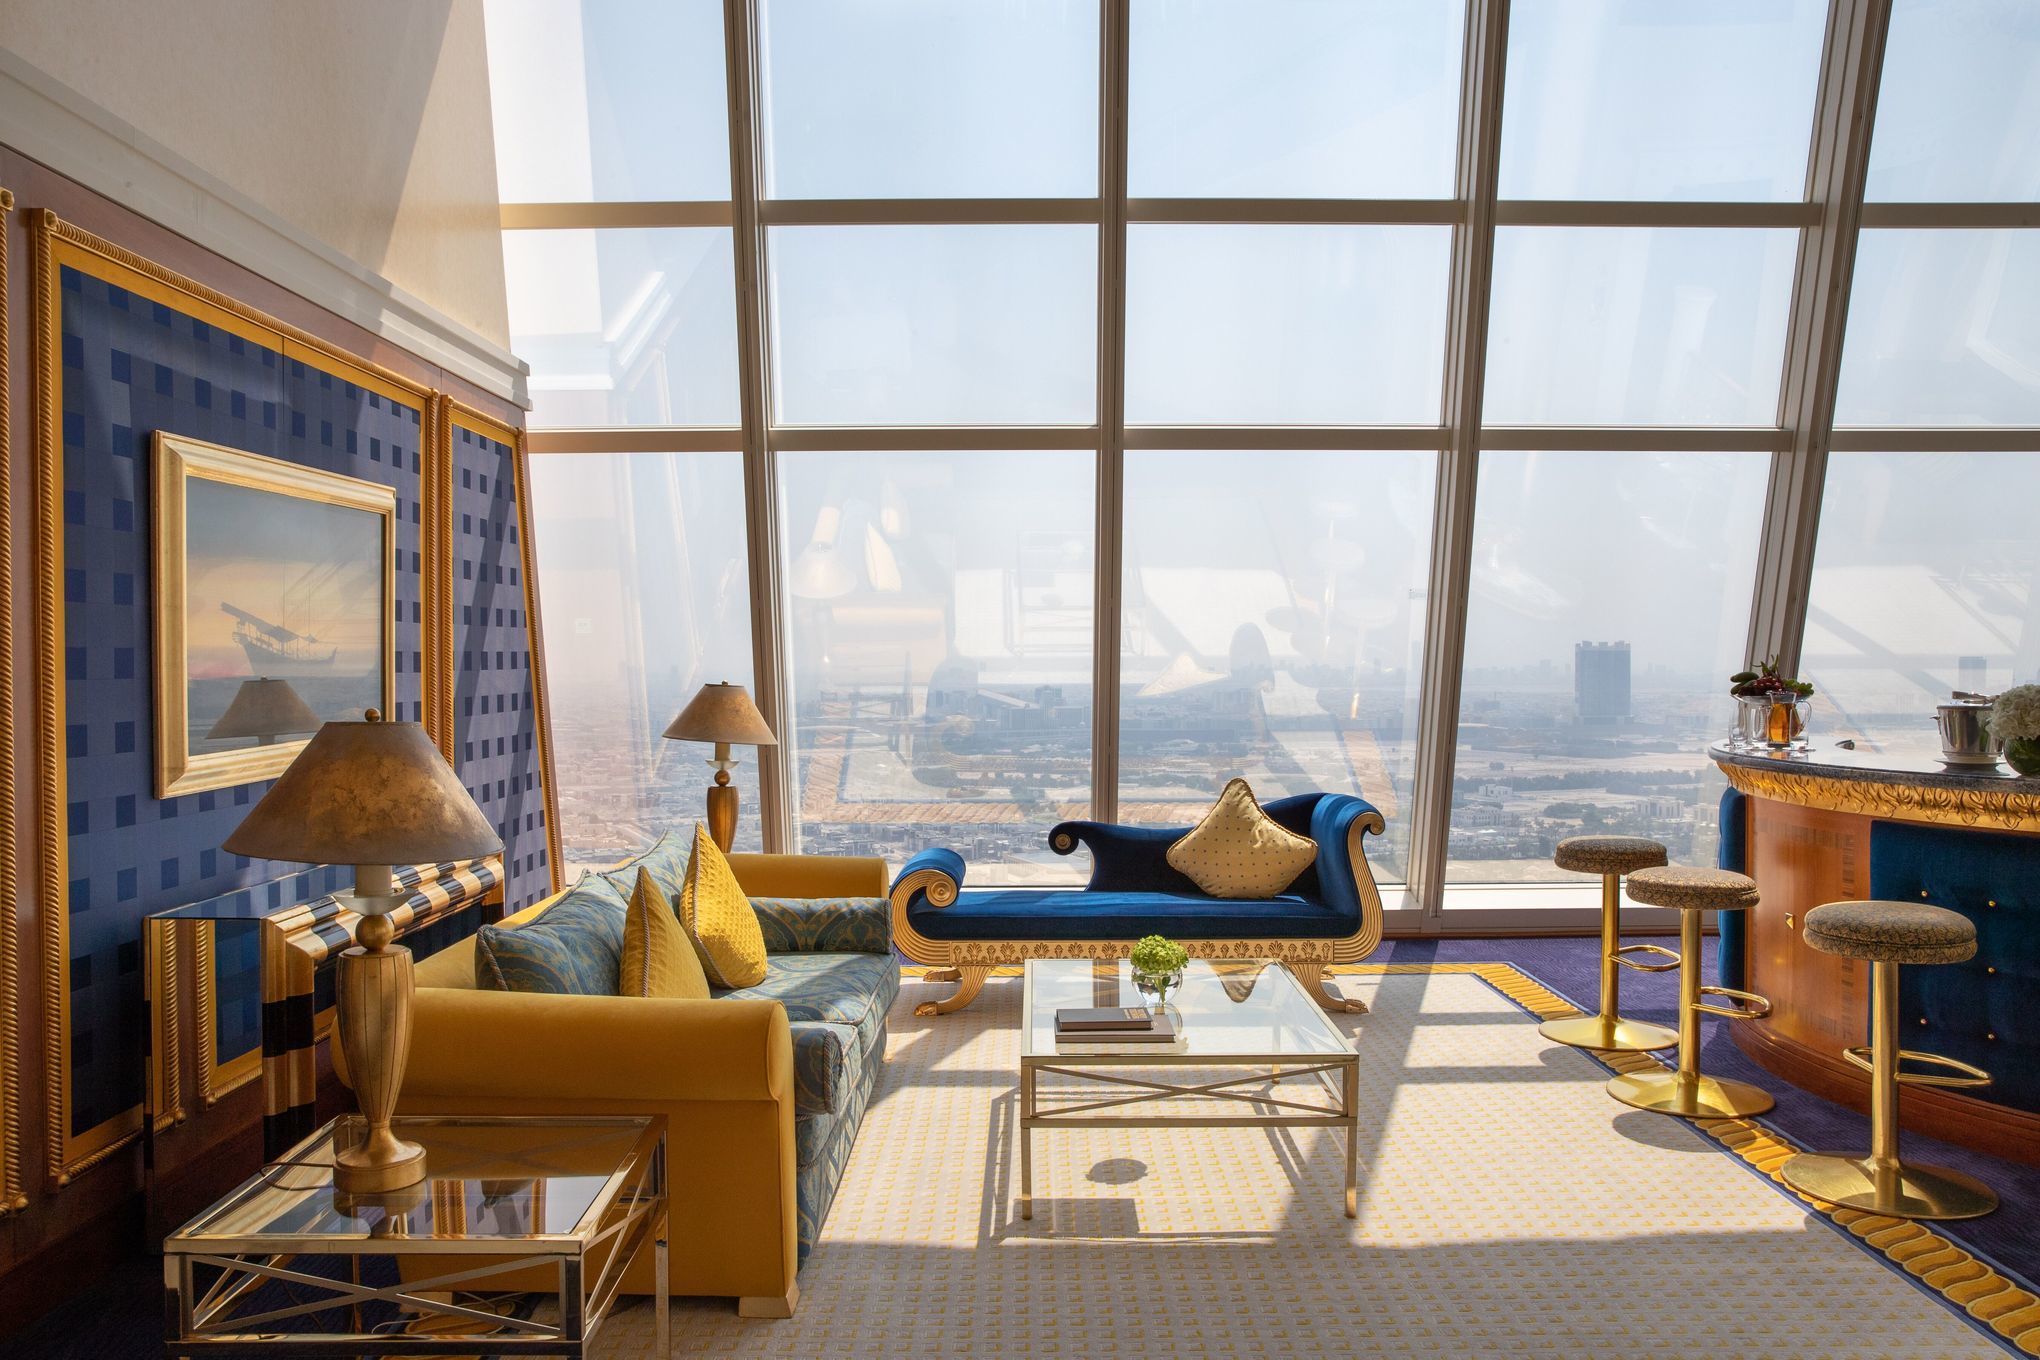 Burj al-Arab: Ein Hotel als Wahrzeichen - Airtours Sphere